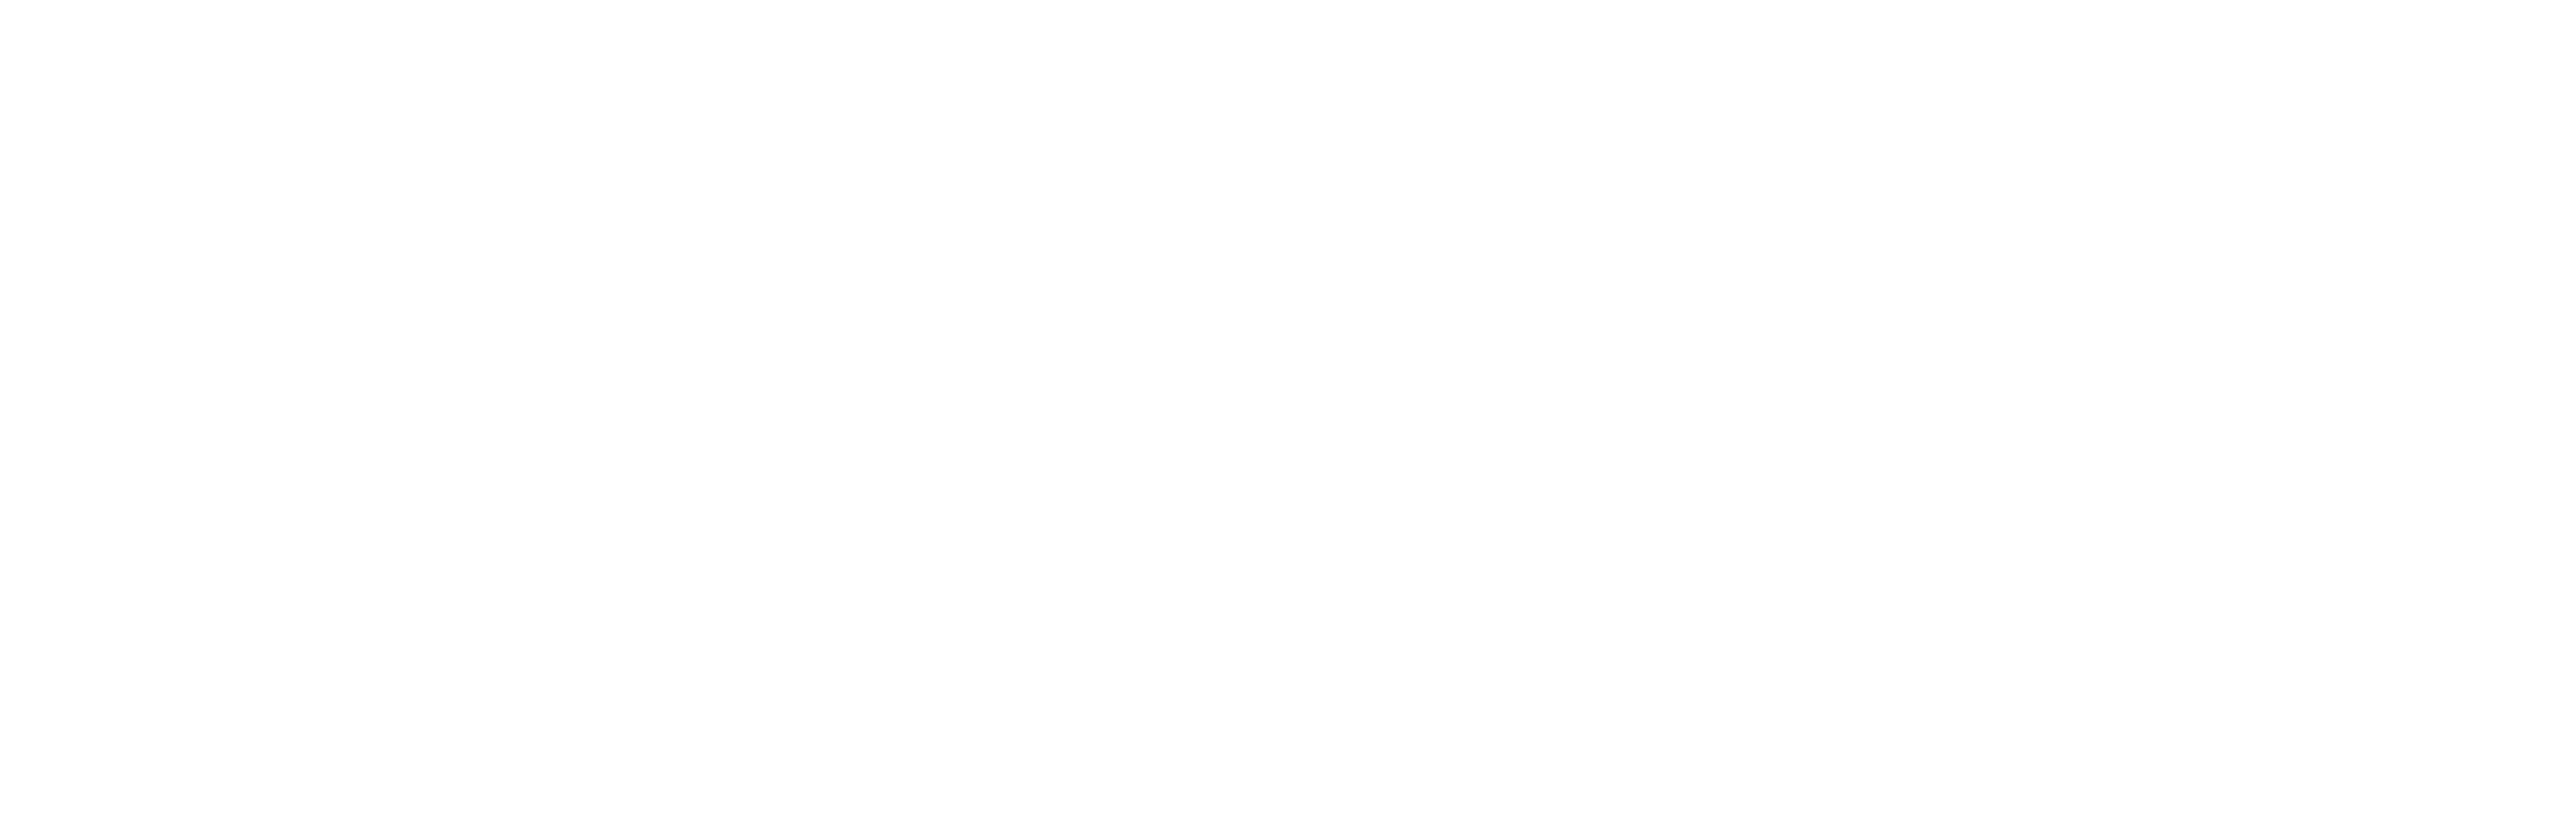 Sean Craig Creative Logo